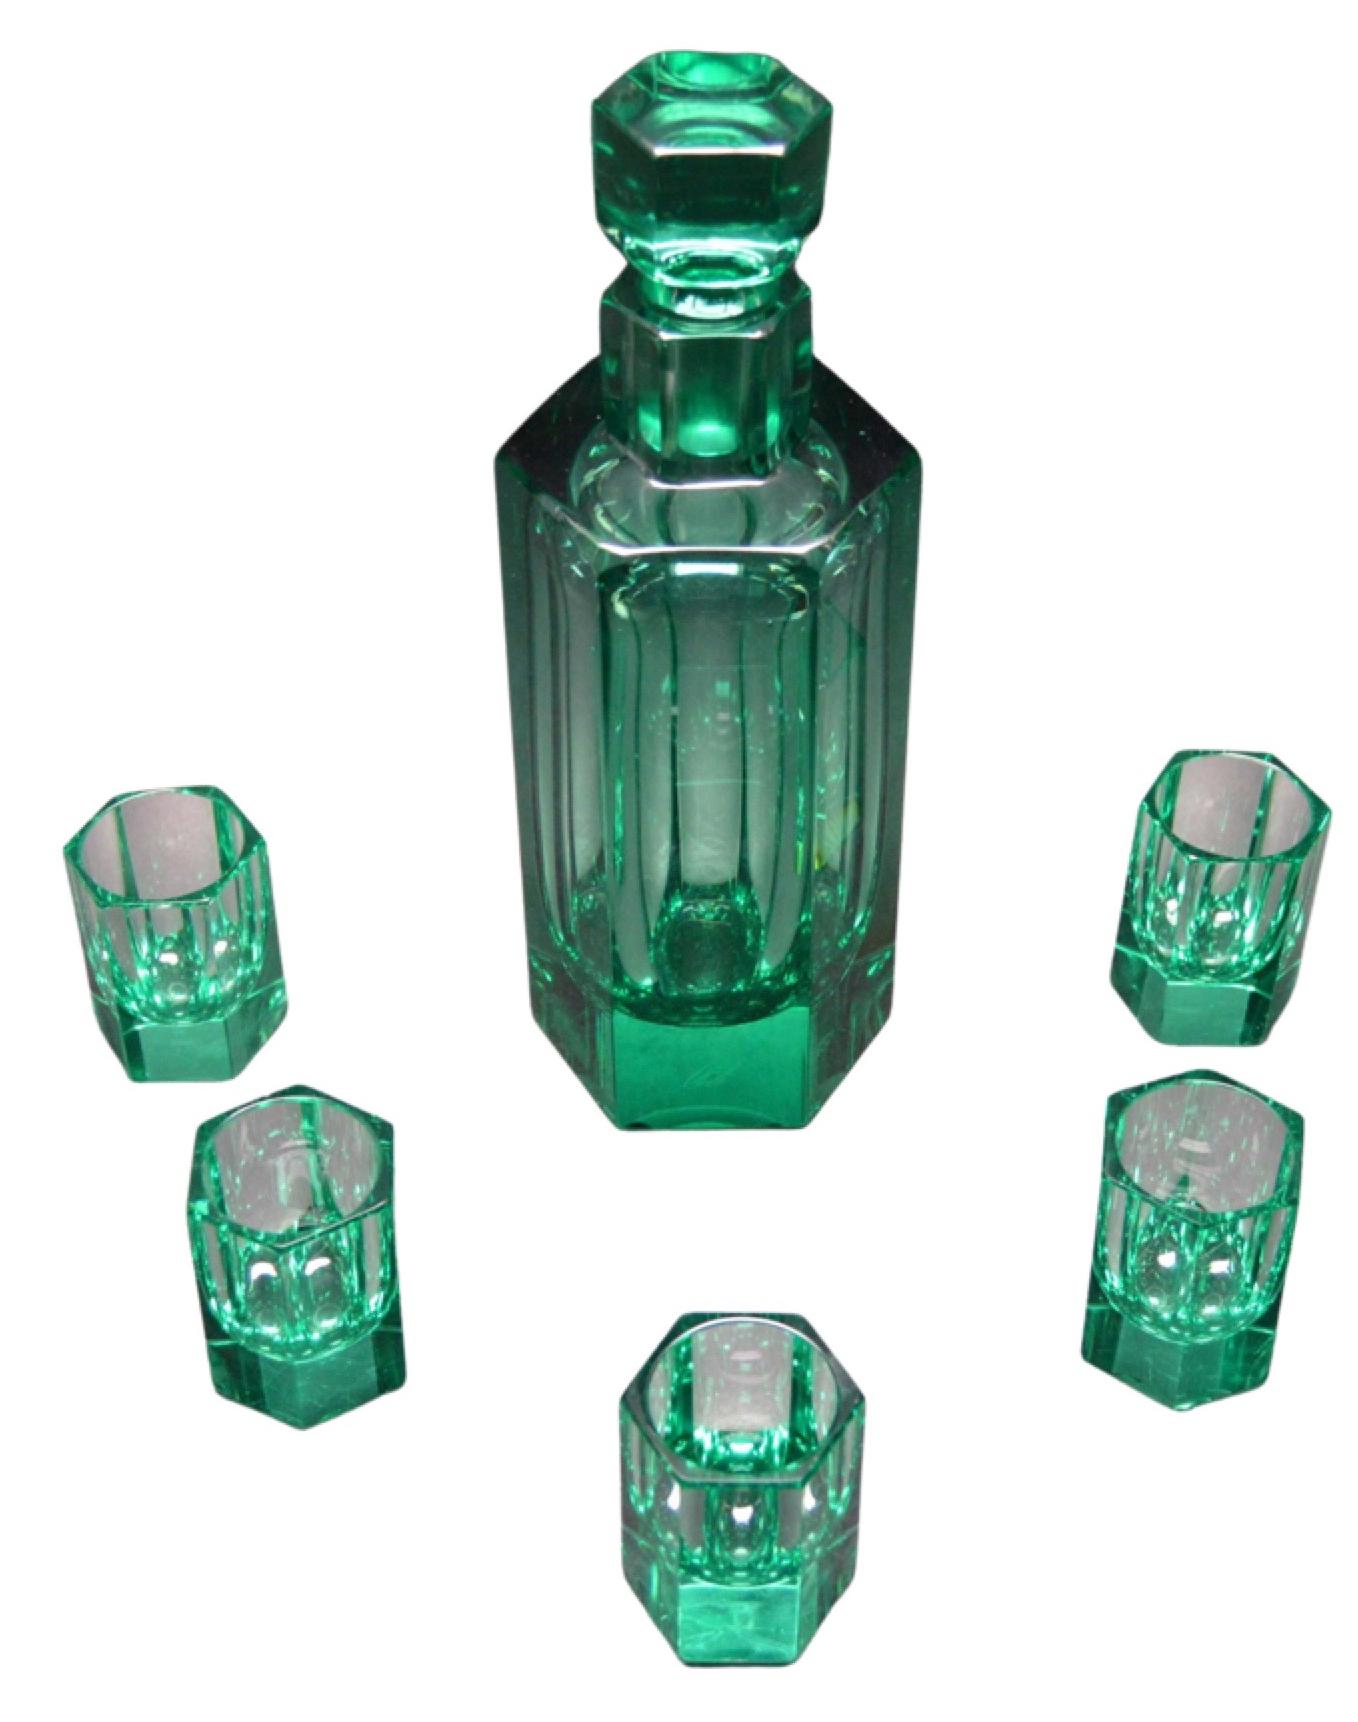 Moser Glas Art Deco Tschechische seltene grüne Dekanter Set. Der Dekanter ist mit Moser Carlsbad gekennzeichnet. Die Farbe ist unglaublich, niemand kann Farben wie Moser machen, willkommen in der Smaragdstadt, auch die Verarbeitung und das Gewicht